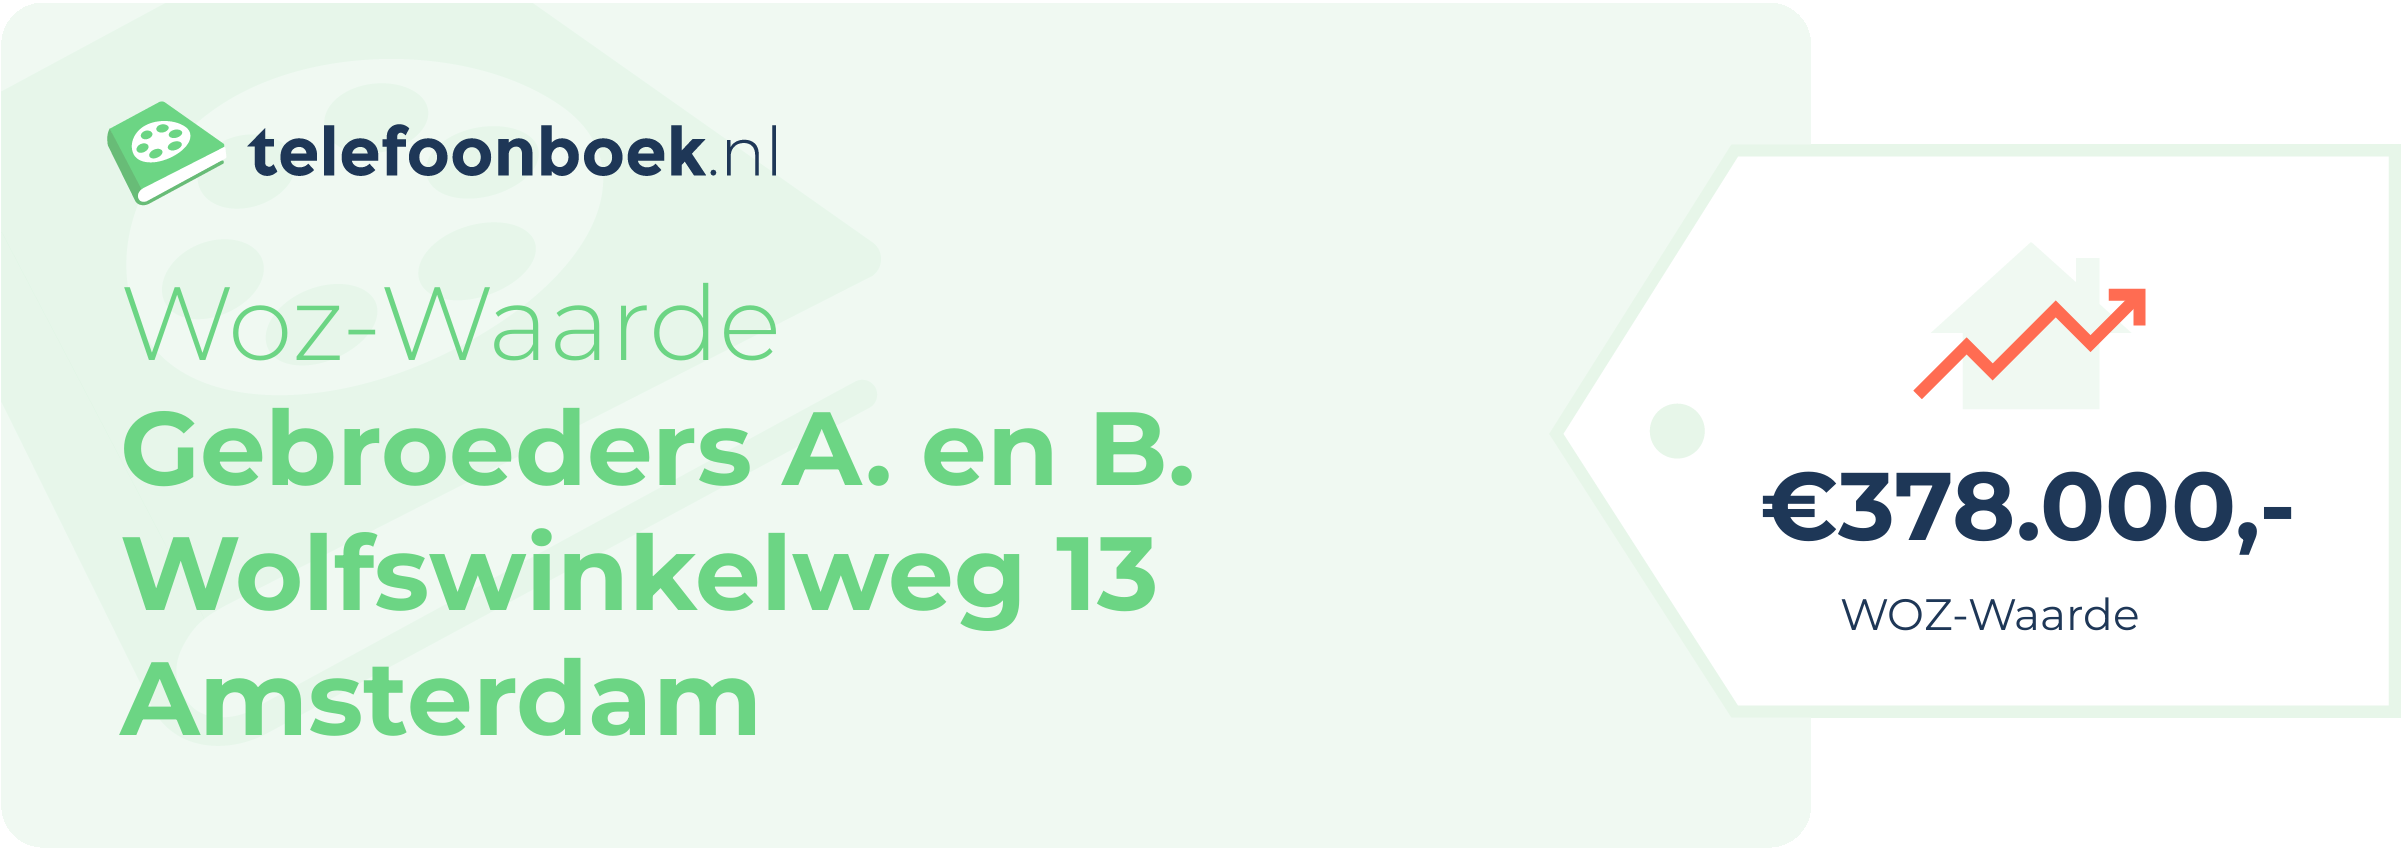 WOZ-waarde Gebroeders A. En B. Wolfswinkelweg 13 Amsterdam